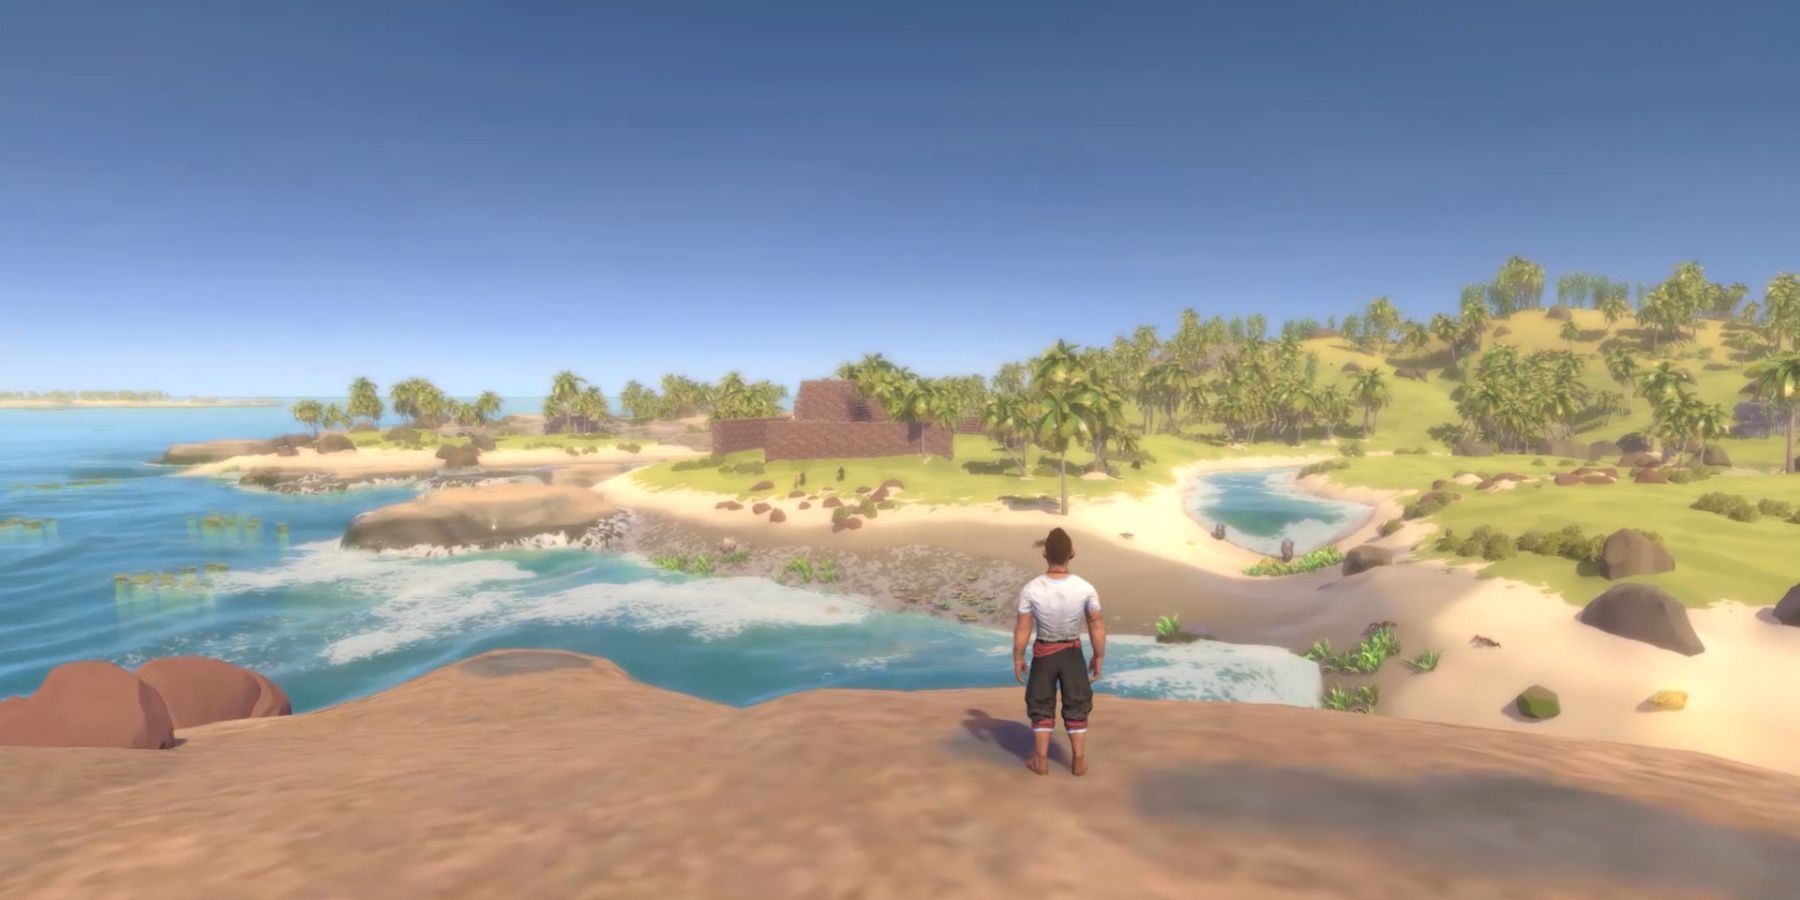 Player enjoying the scenery in Breakwaters